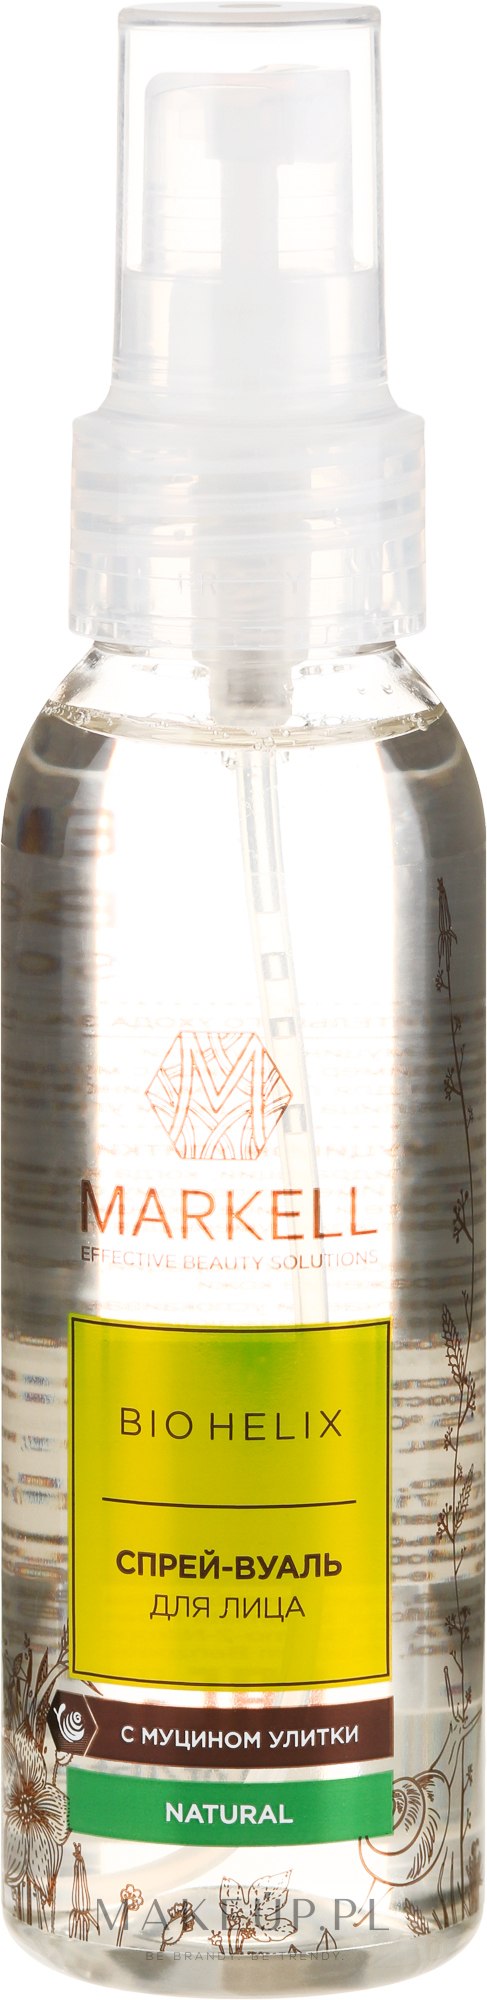 markell bio helix opinie szampon